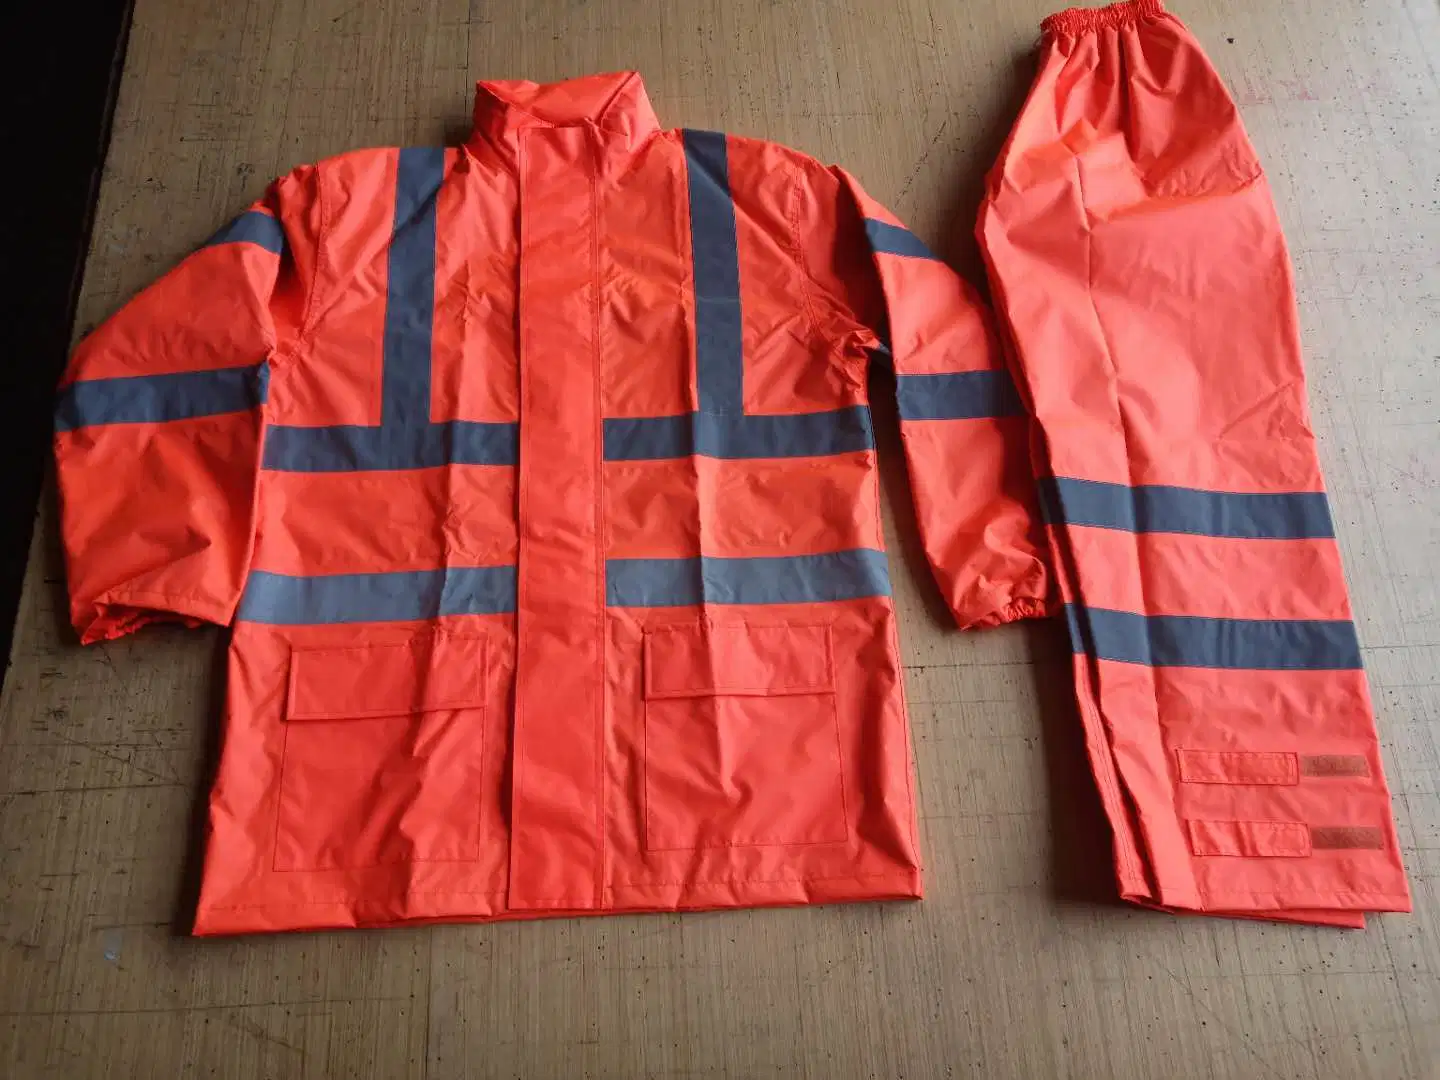 Reflective Safety Clothing Raincoat Safety Workwear